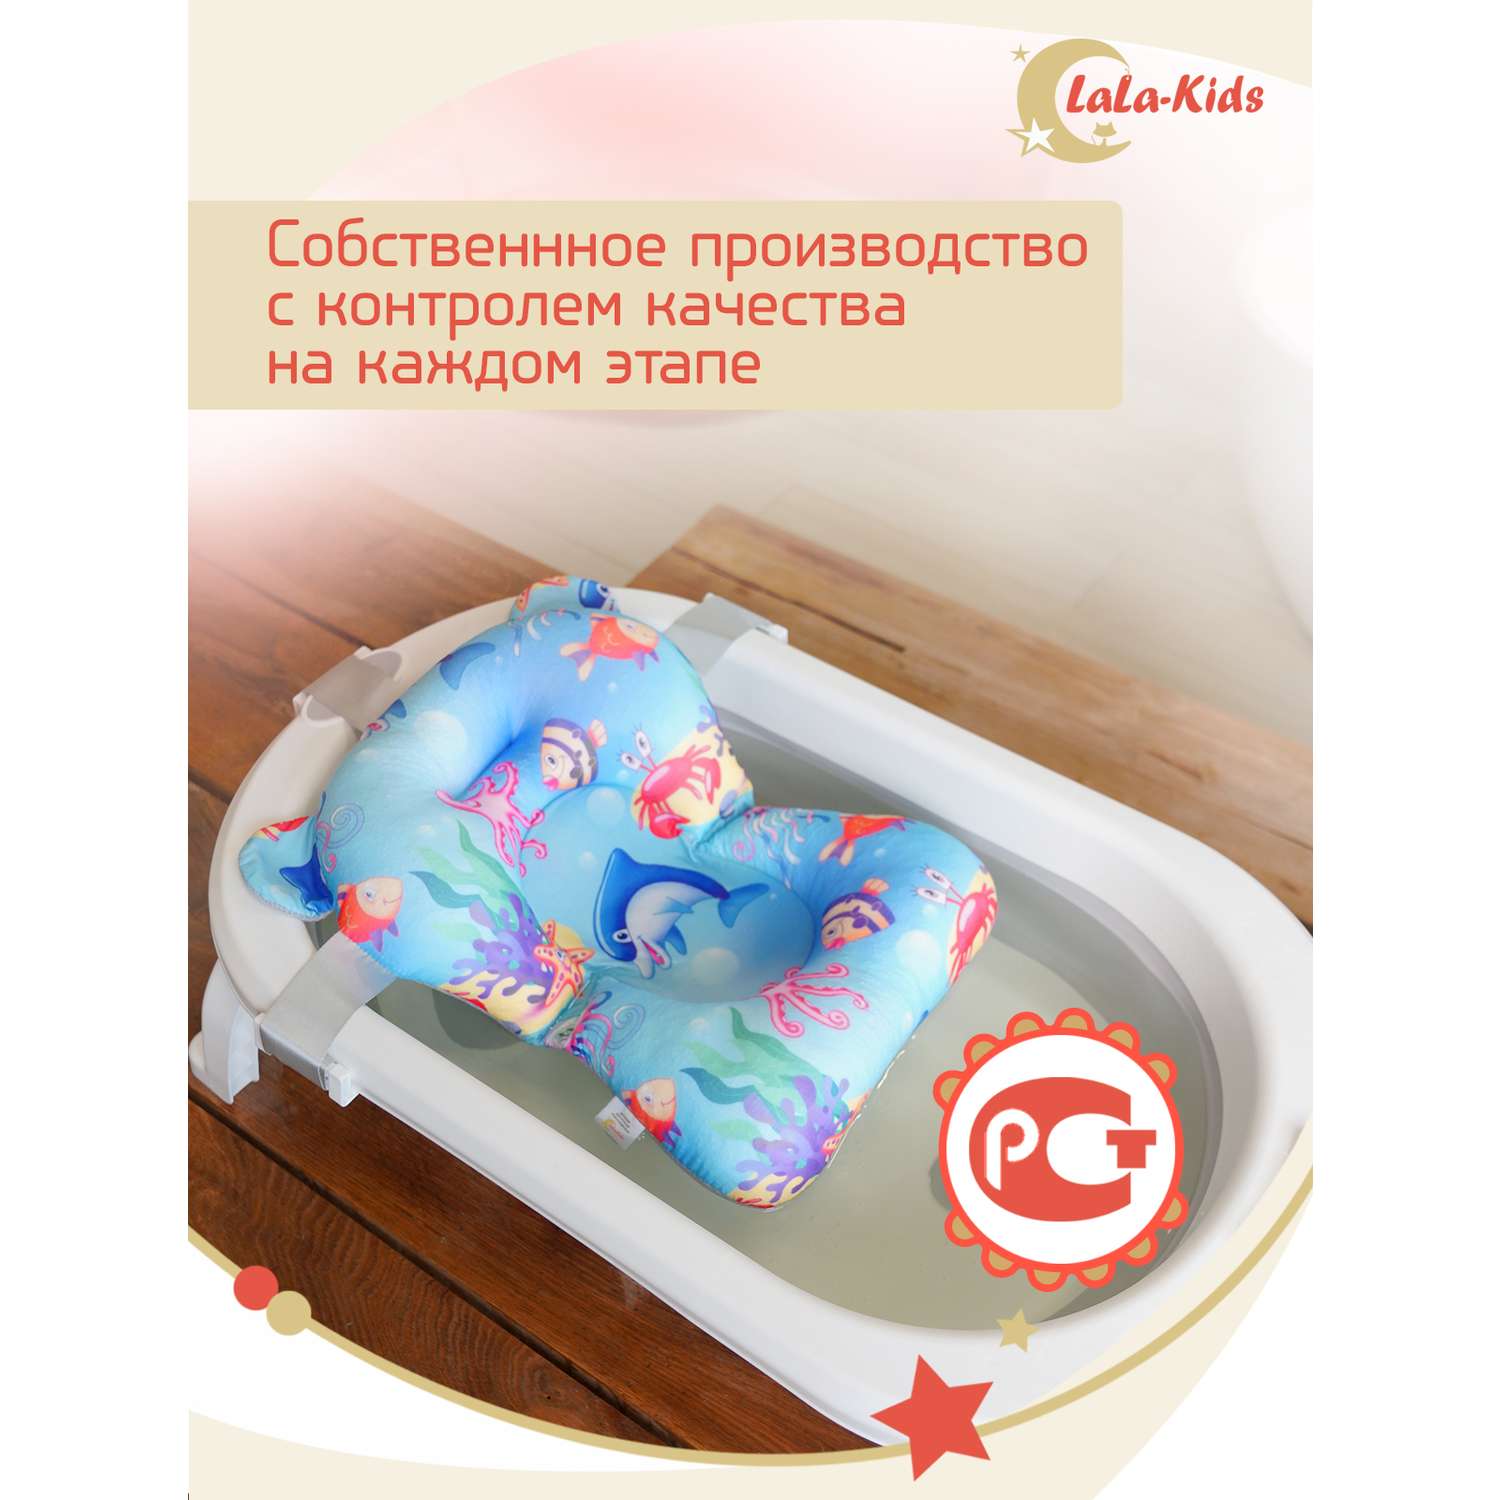 Детская ванночка LaLa-Kids складная для купания новорожденных с термометром и матрасиком в комплекте - фото 20